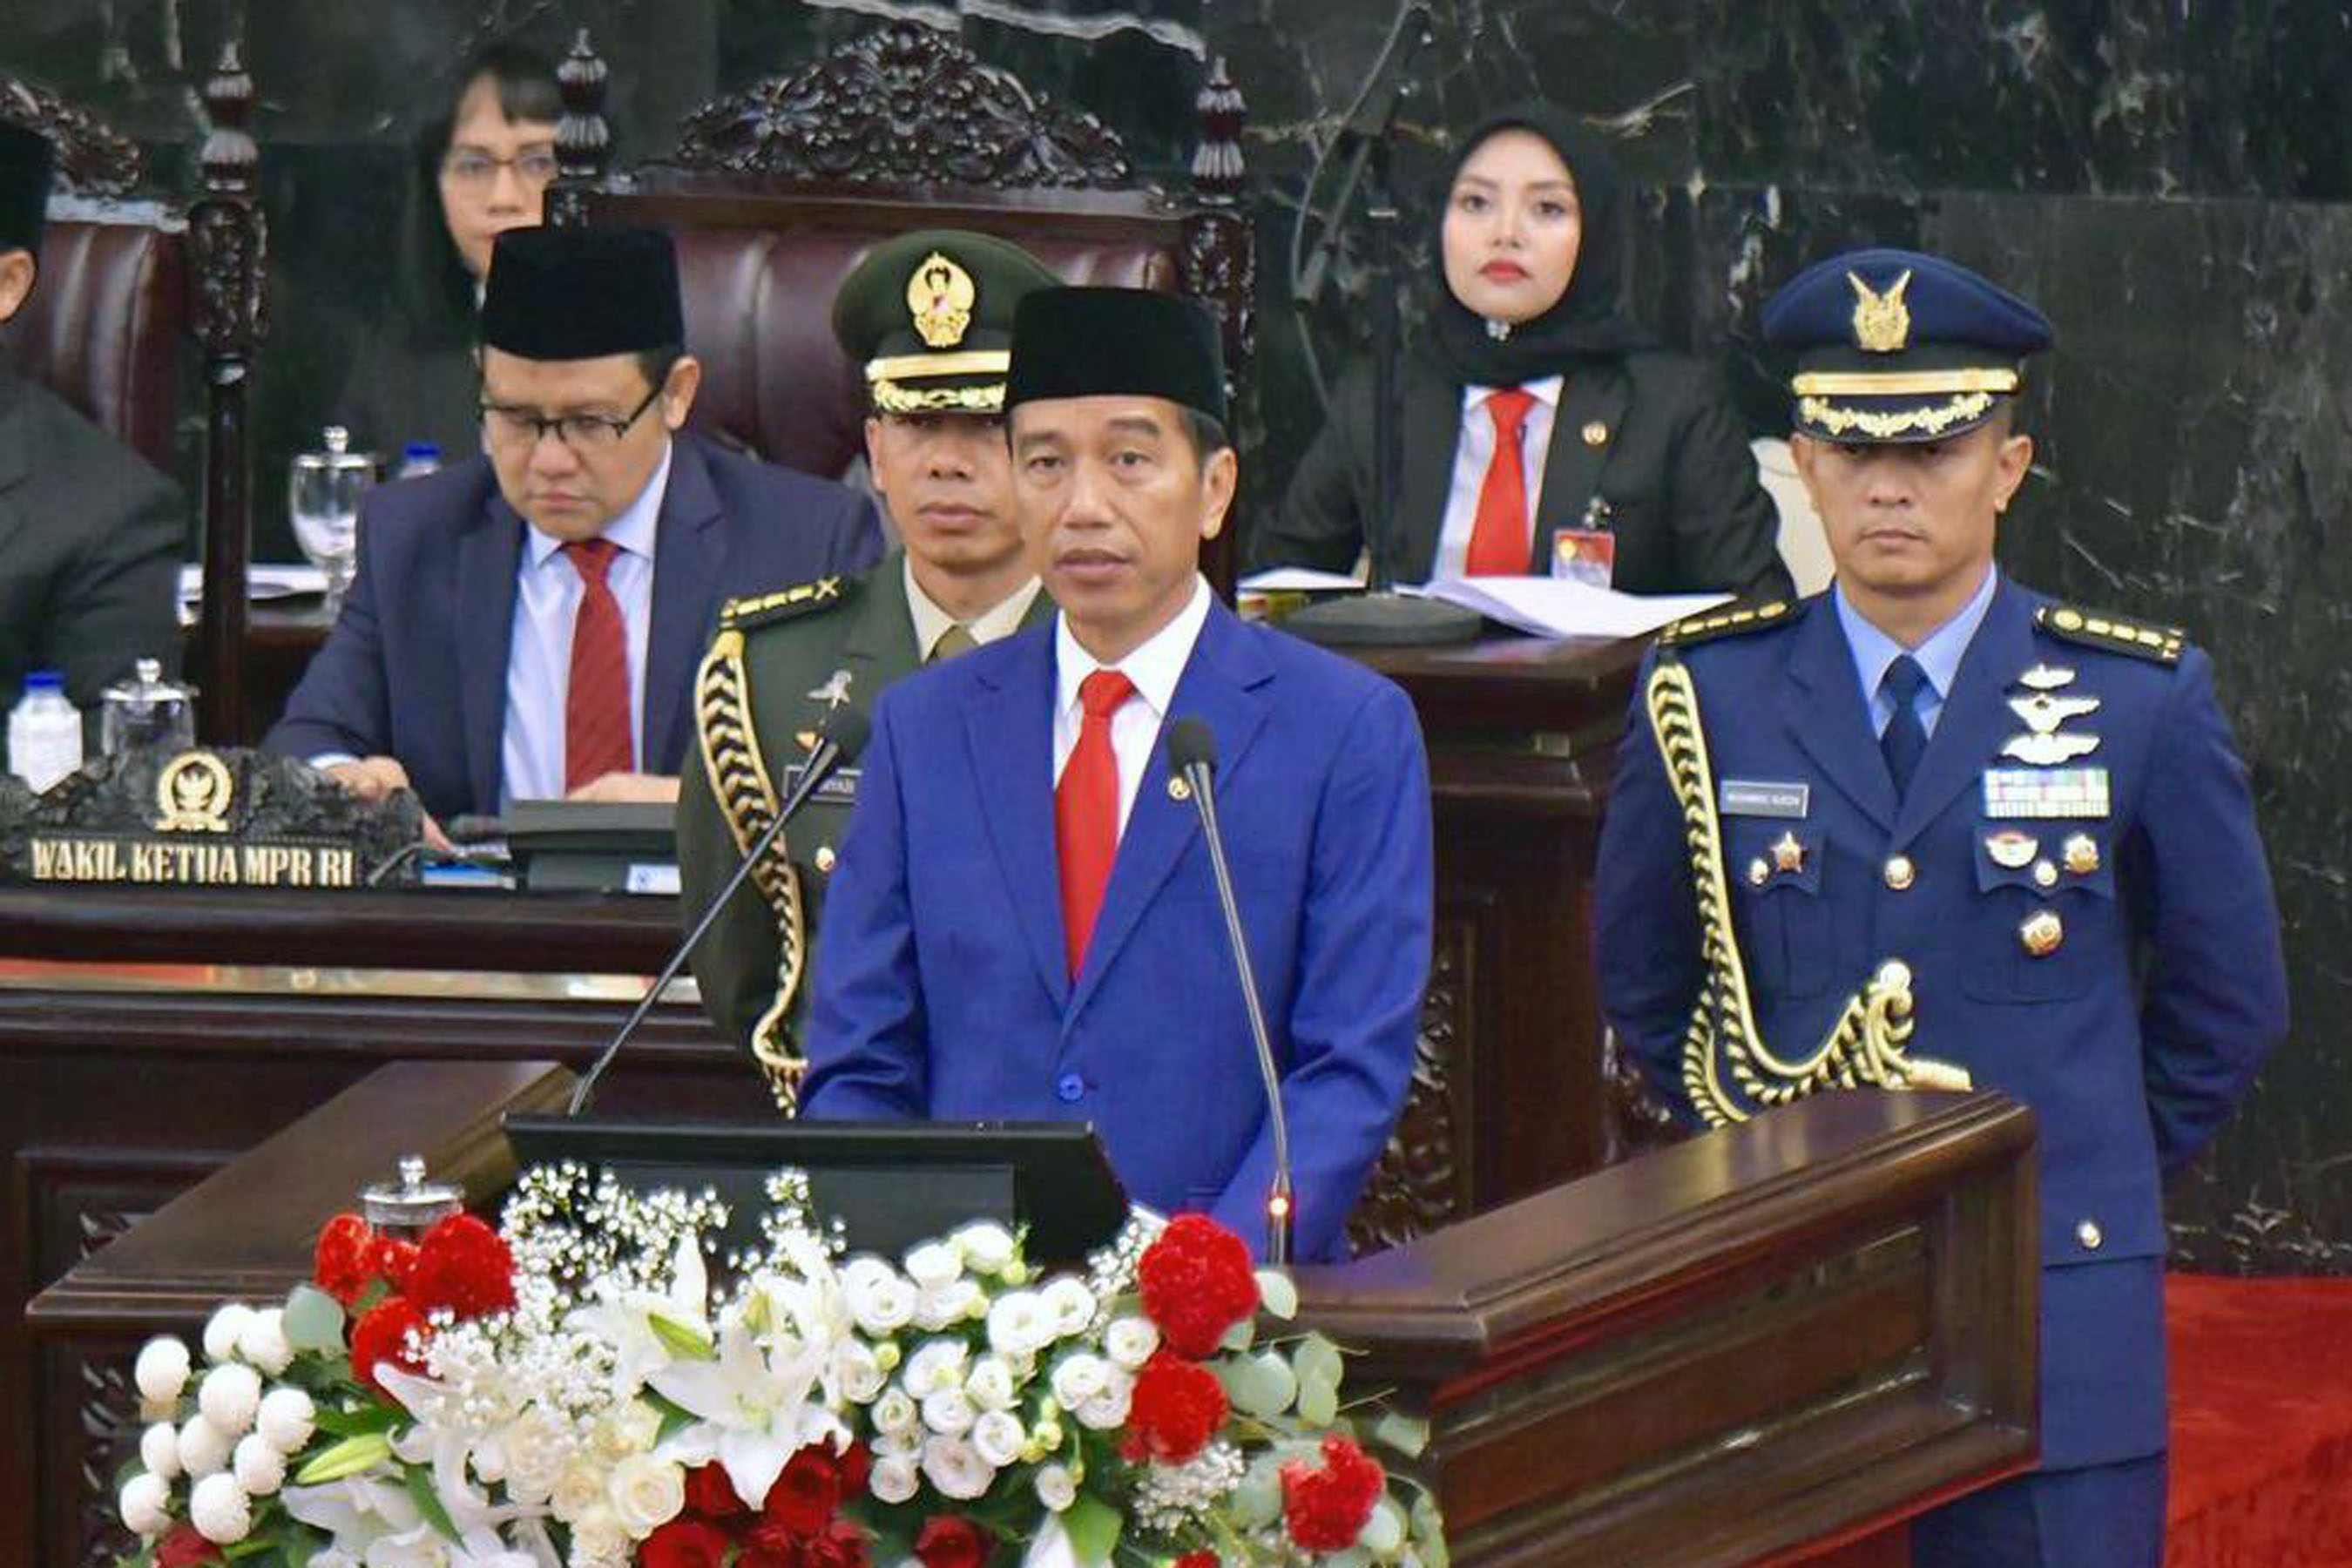 Presiden Jokowi Masuk Top 50 Tokoh Muslim Berpengaruh di Dunia 2019